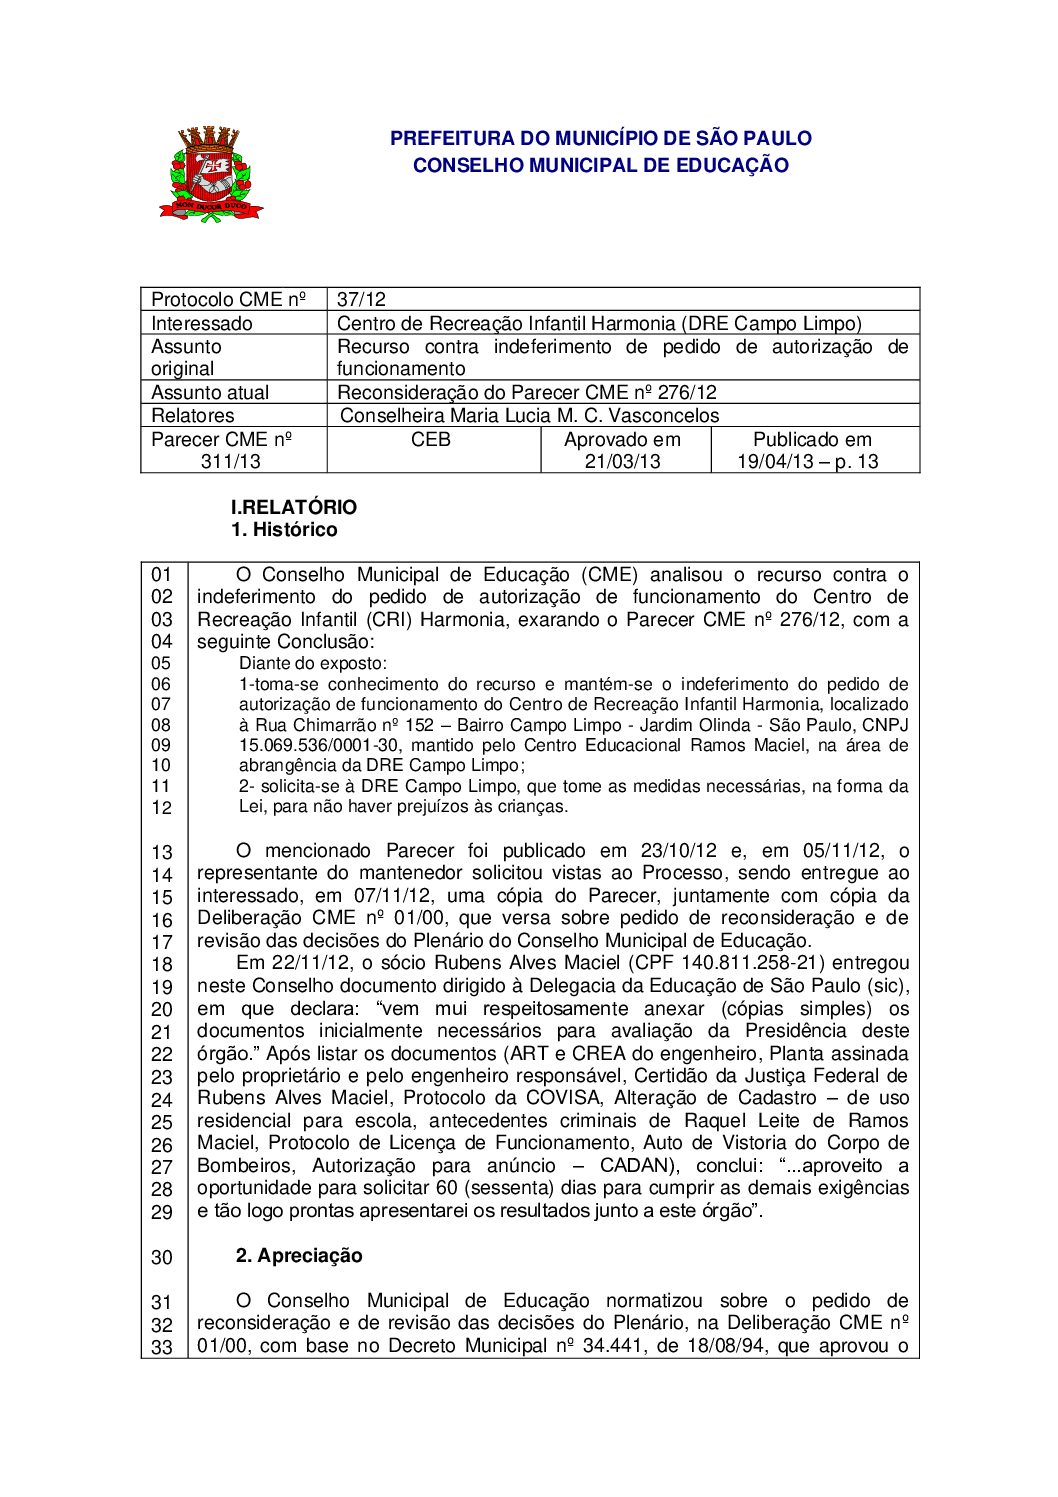 Parecer CME nº 311/2013 - Centro de Recreação Infantil Harmonia (DRE Campo Limpo) - Recurso contra indeferimento de pedido de autorização de funcionamento